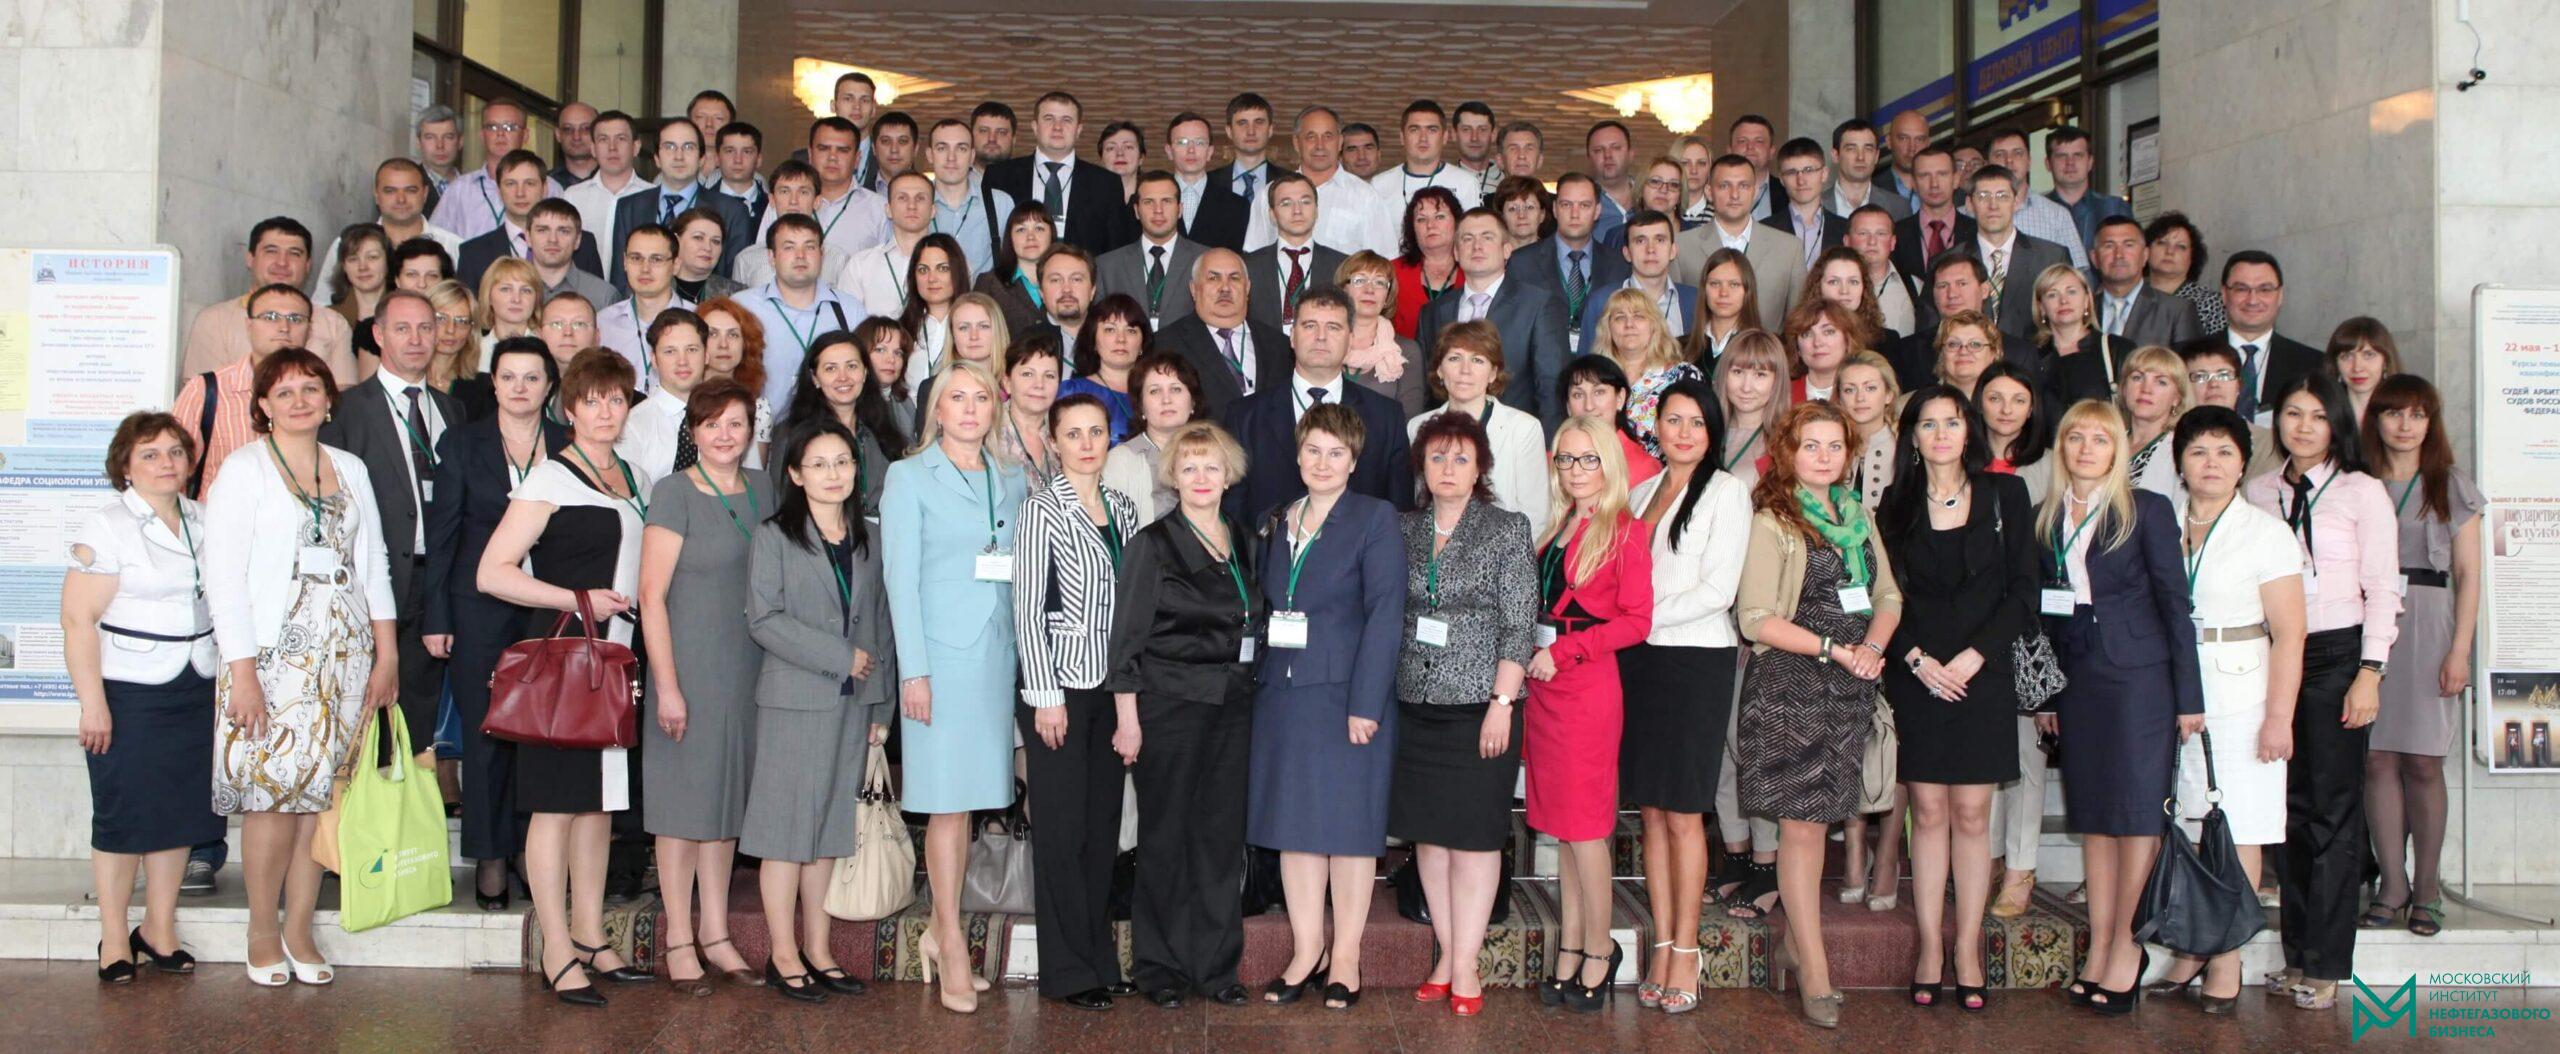 HR-Форум, Кадровая и социальная работа в нефтегазовых компаниях, Москва, 2012